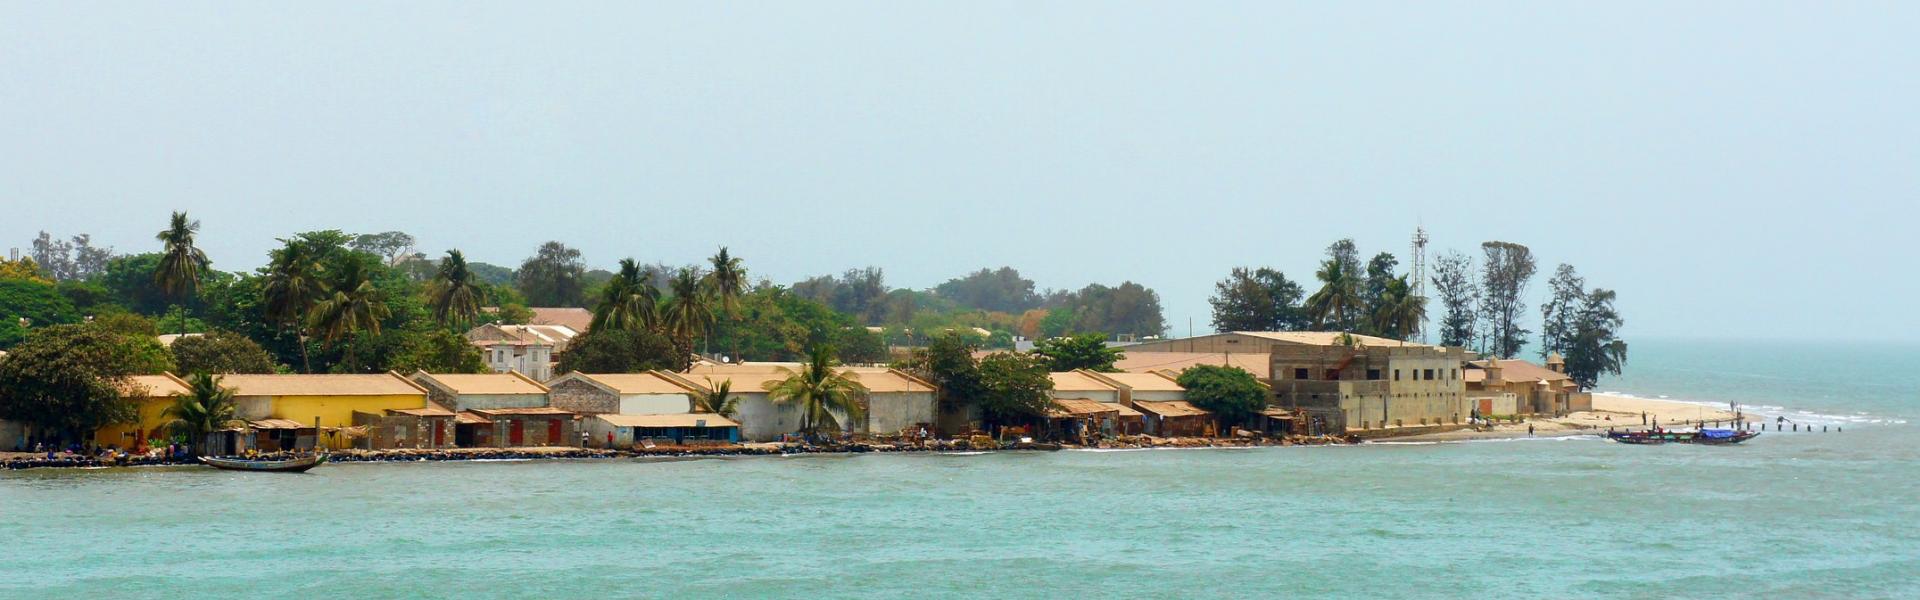 Noclegi w Gambii - HomeToGo